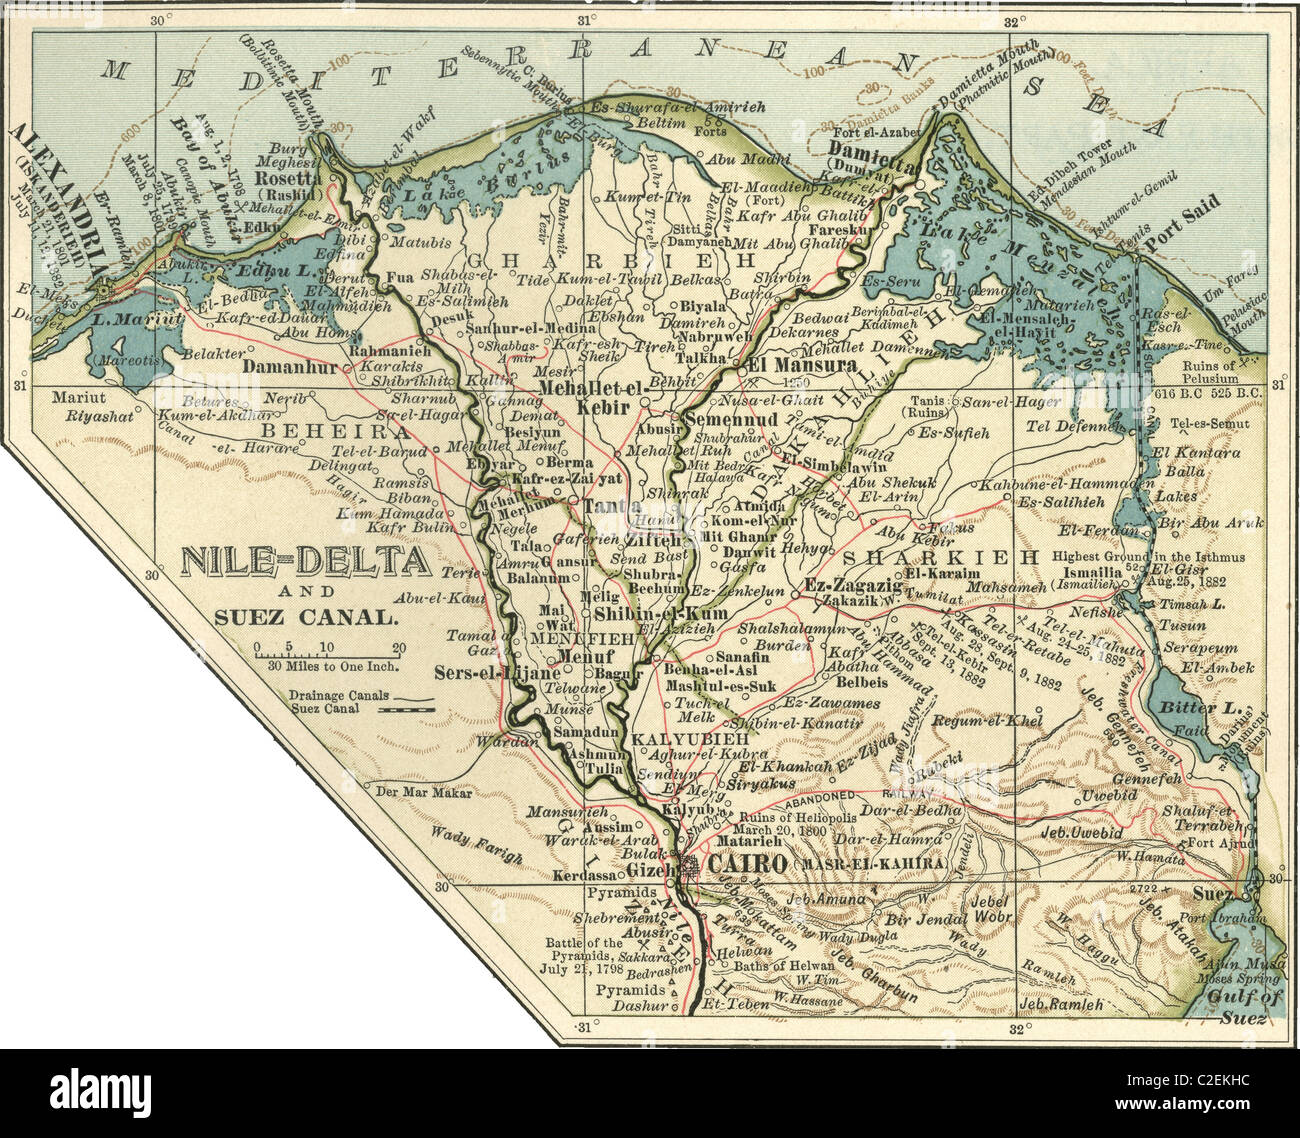 Karte des Nildeltas und Suez-Kanal Stockfoto